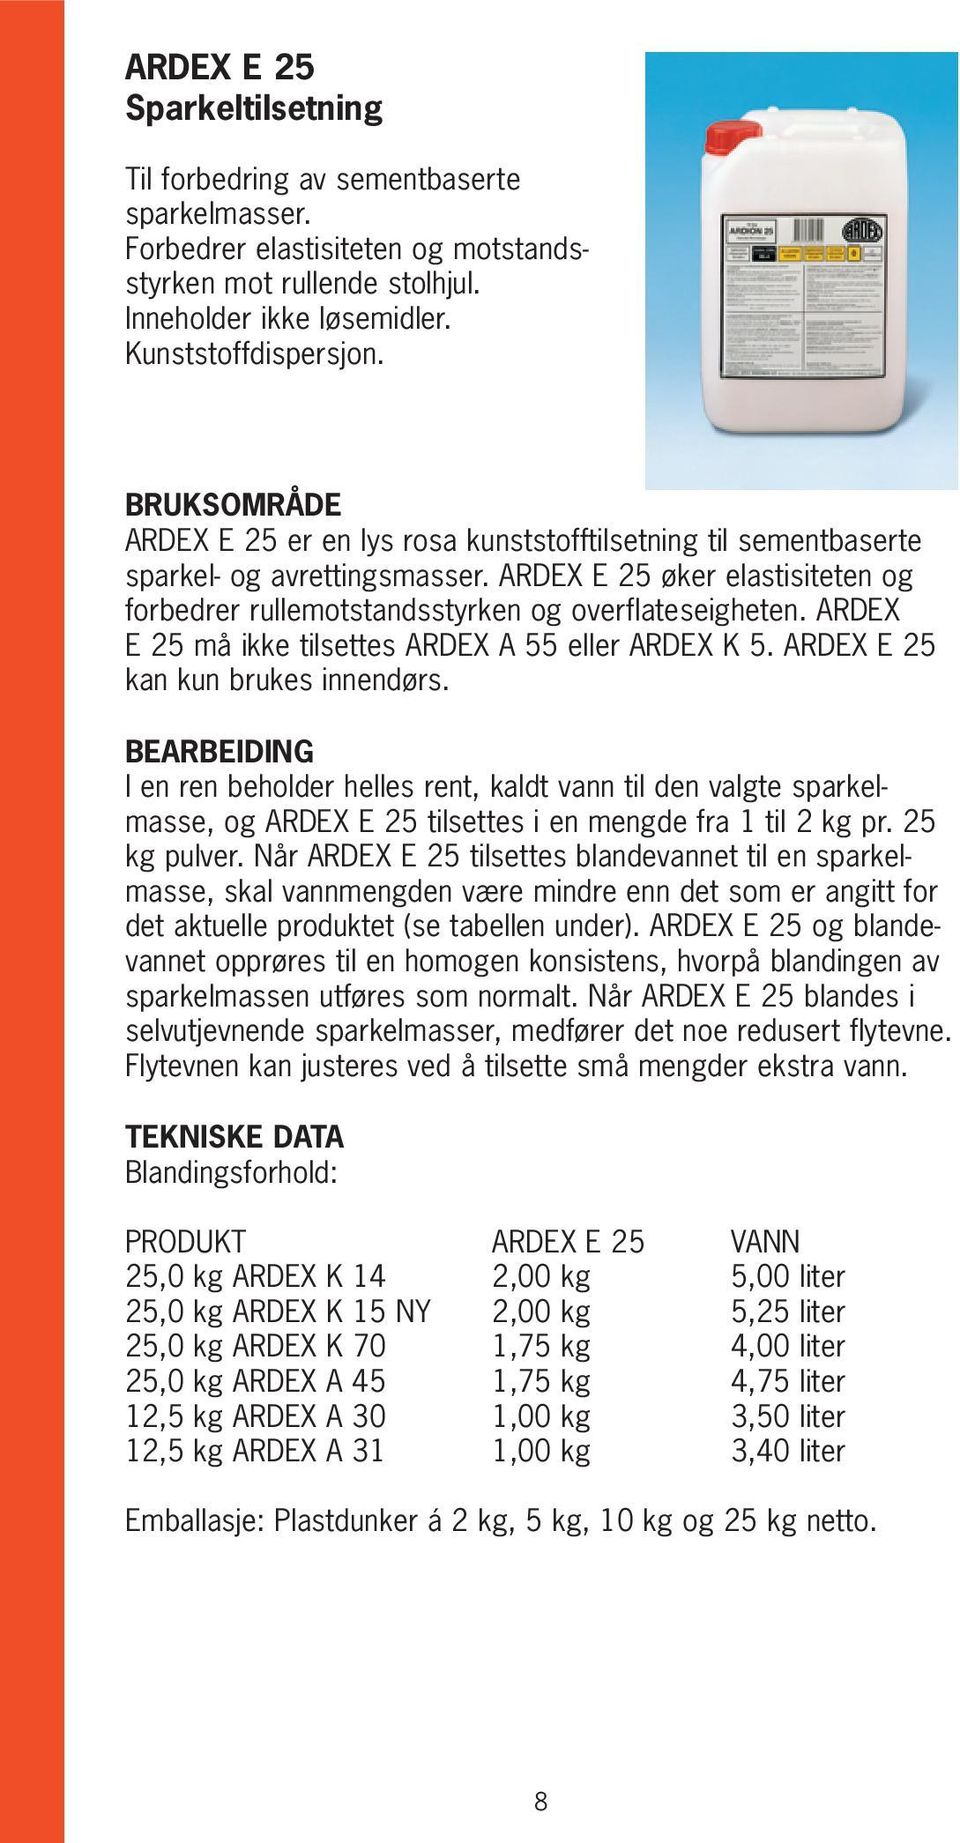 ARDEX E 25 må ikke tilsettes ARDEX A 55 eller ARDEX K 5. ARDEX E 25 kan kun brukes innendørs.